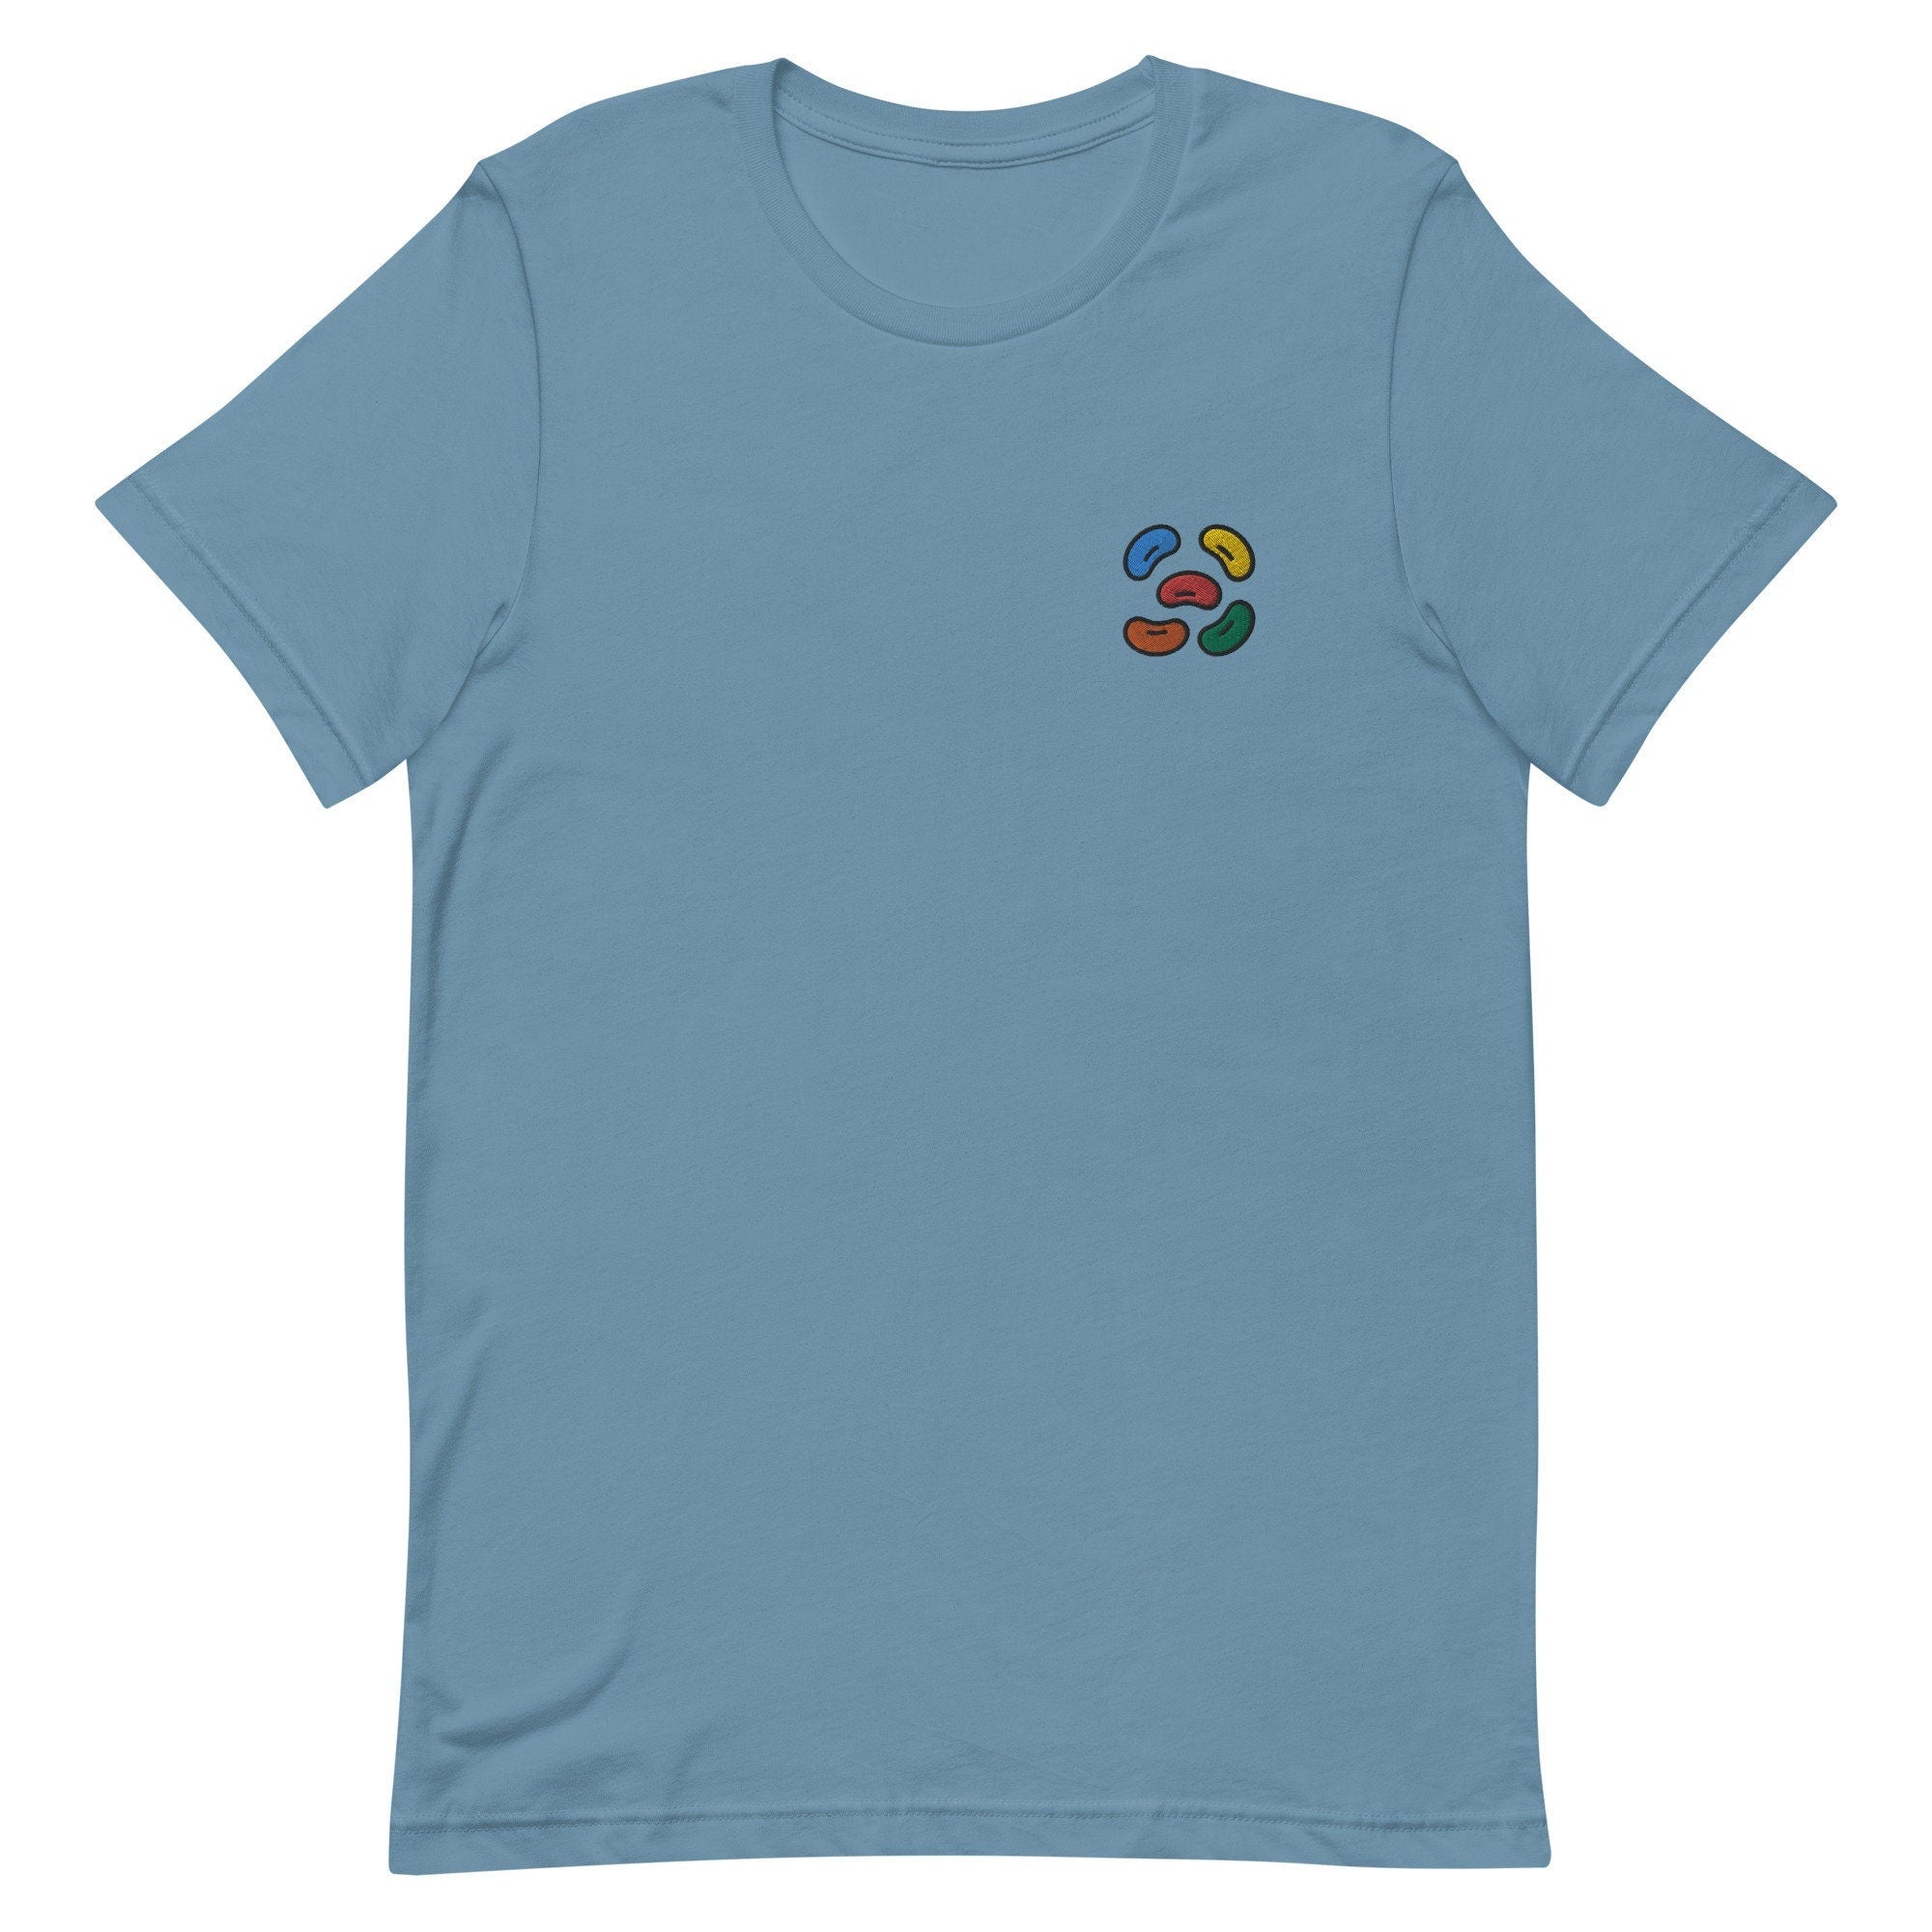 Jellybeans Premium Men's T-Shirt, Embroidered Men's T-Shirt Gift for Boyfriend, Men's Short Sleeve Shirt - Multiple Colors